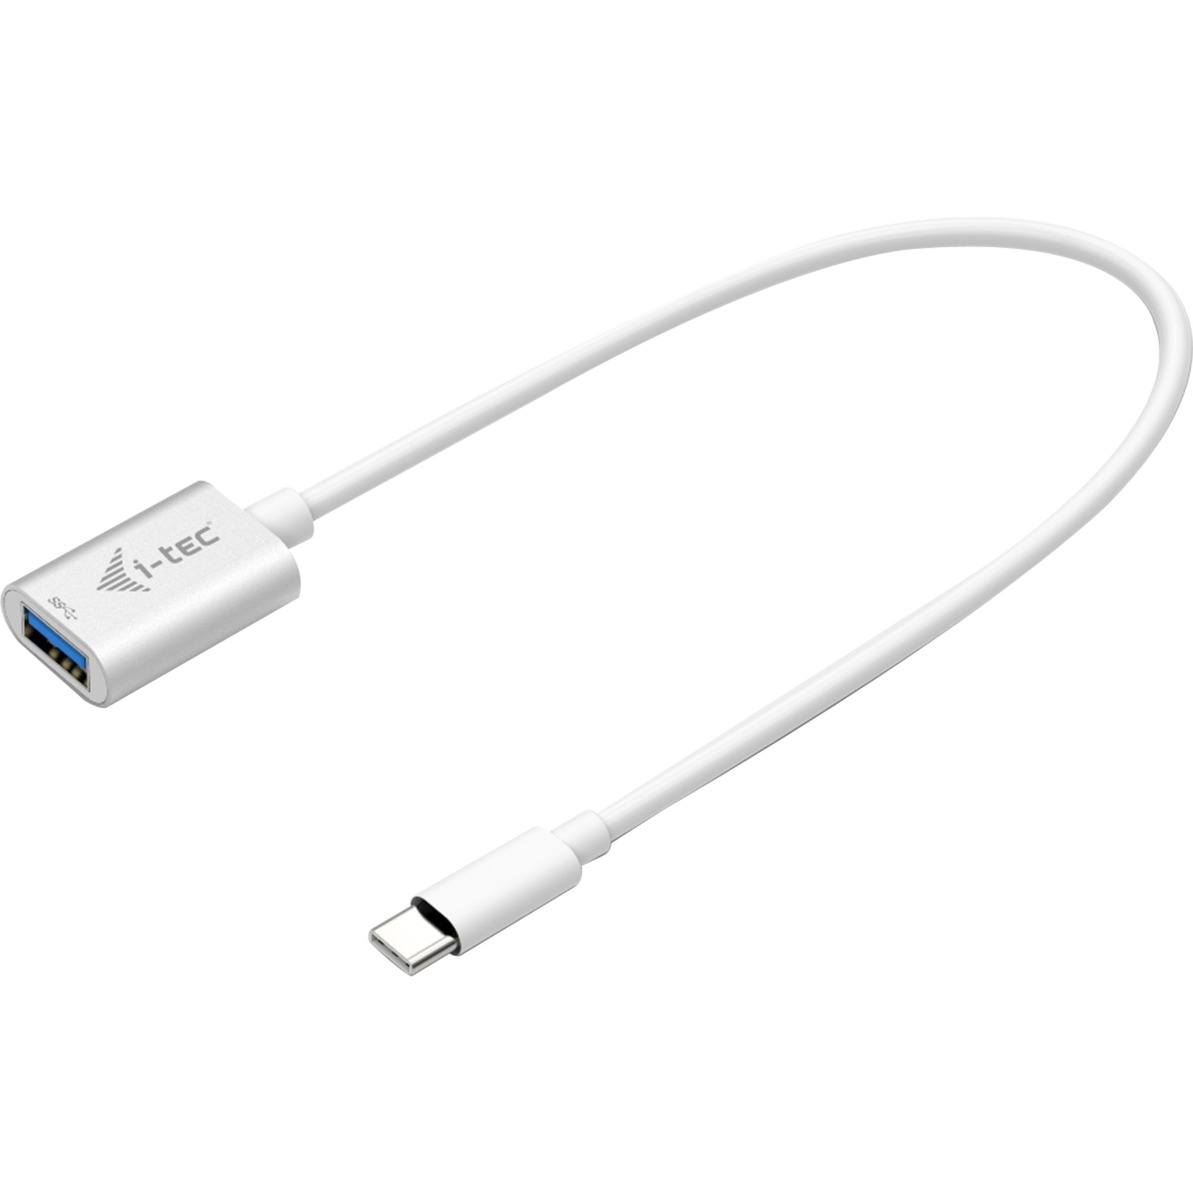 Image of Alternate - USB-C Adapter, Kabel online einkaufen bei Alternate